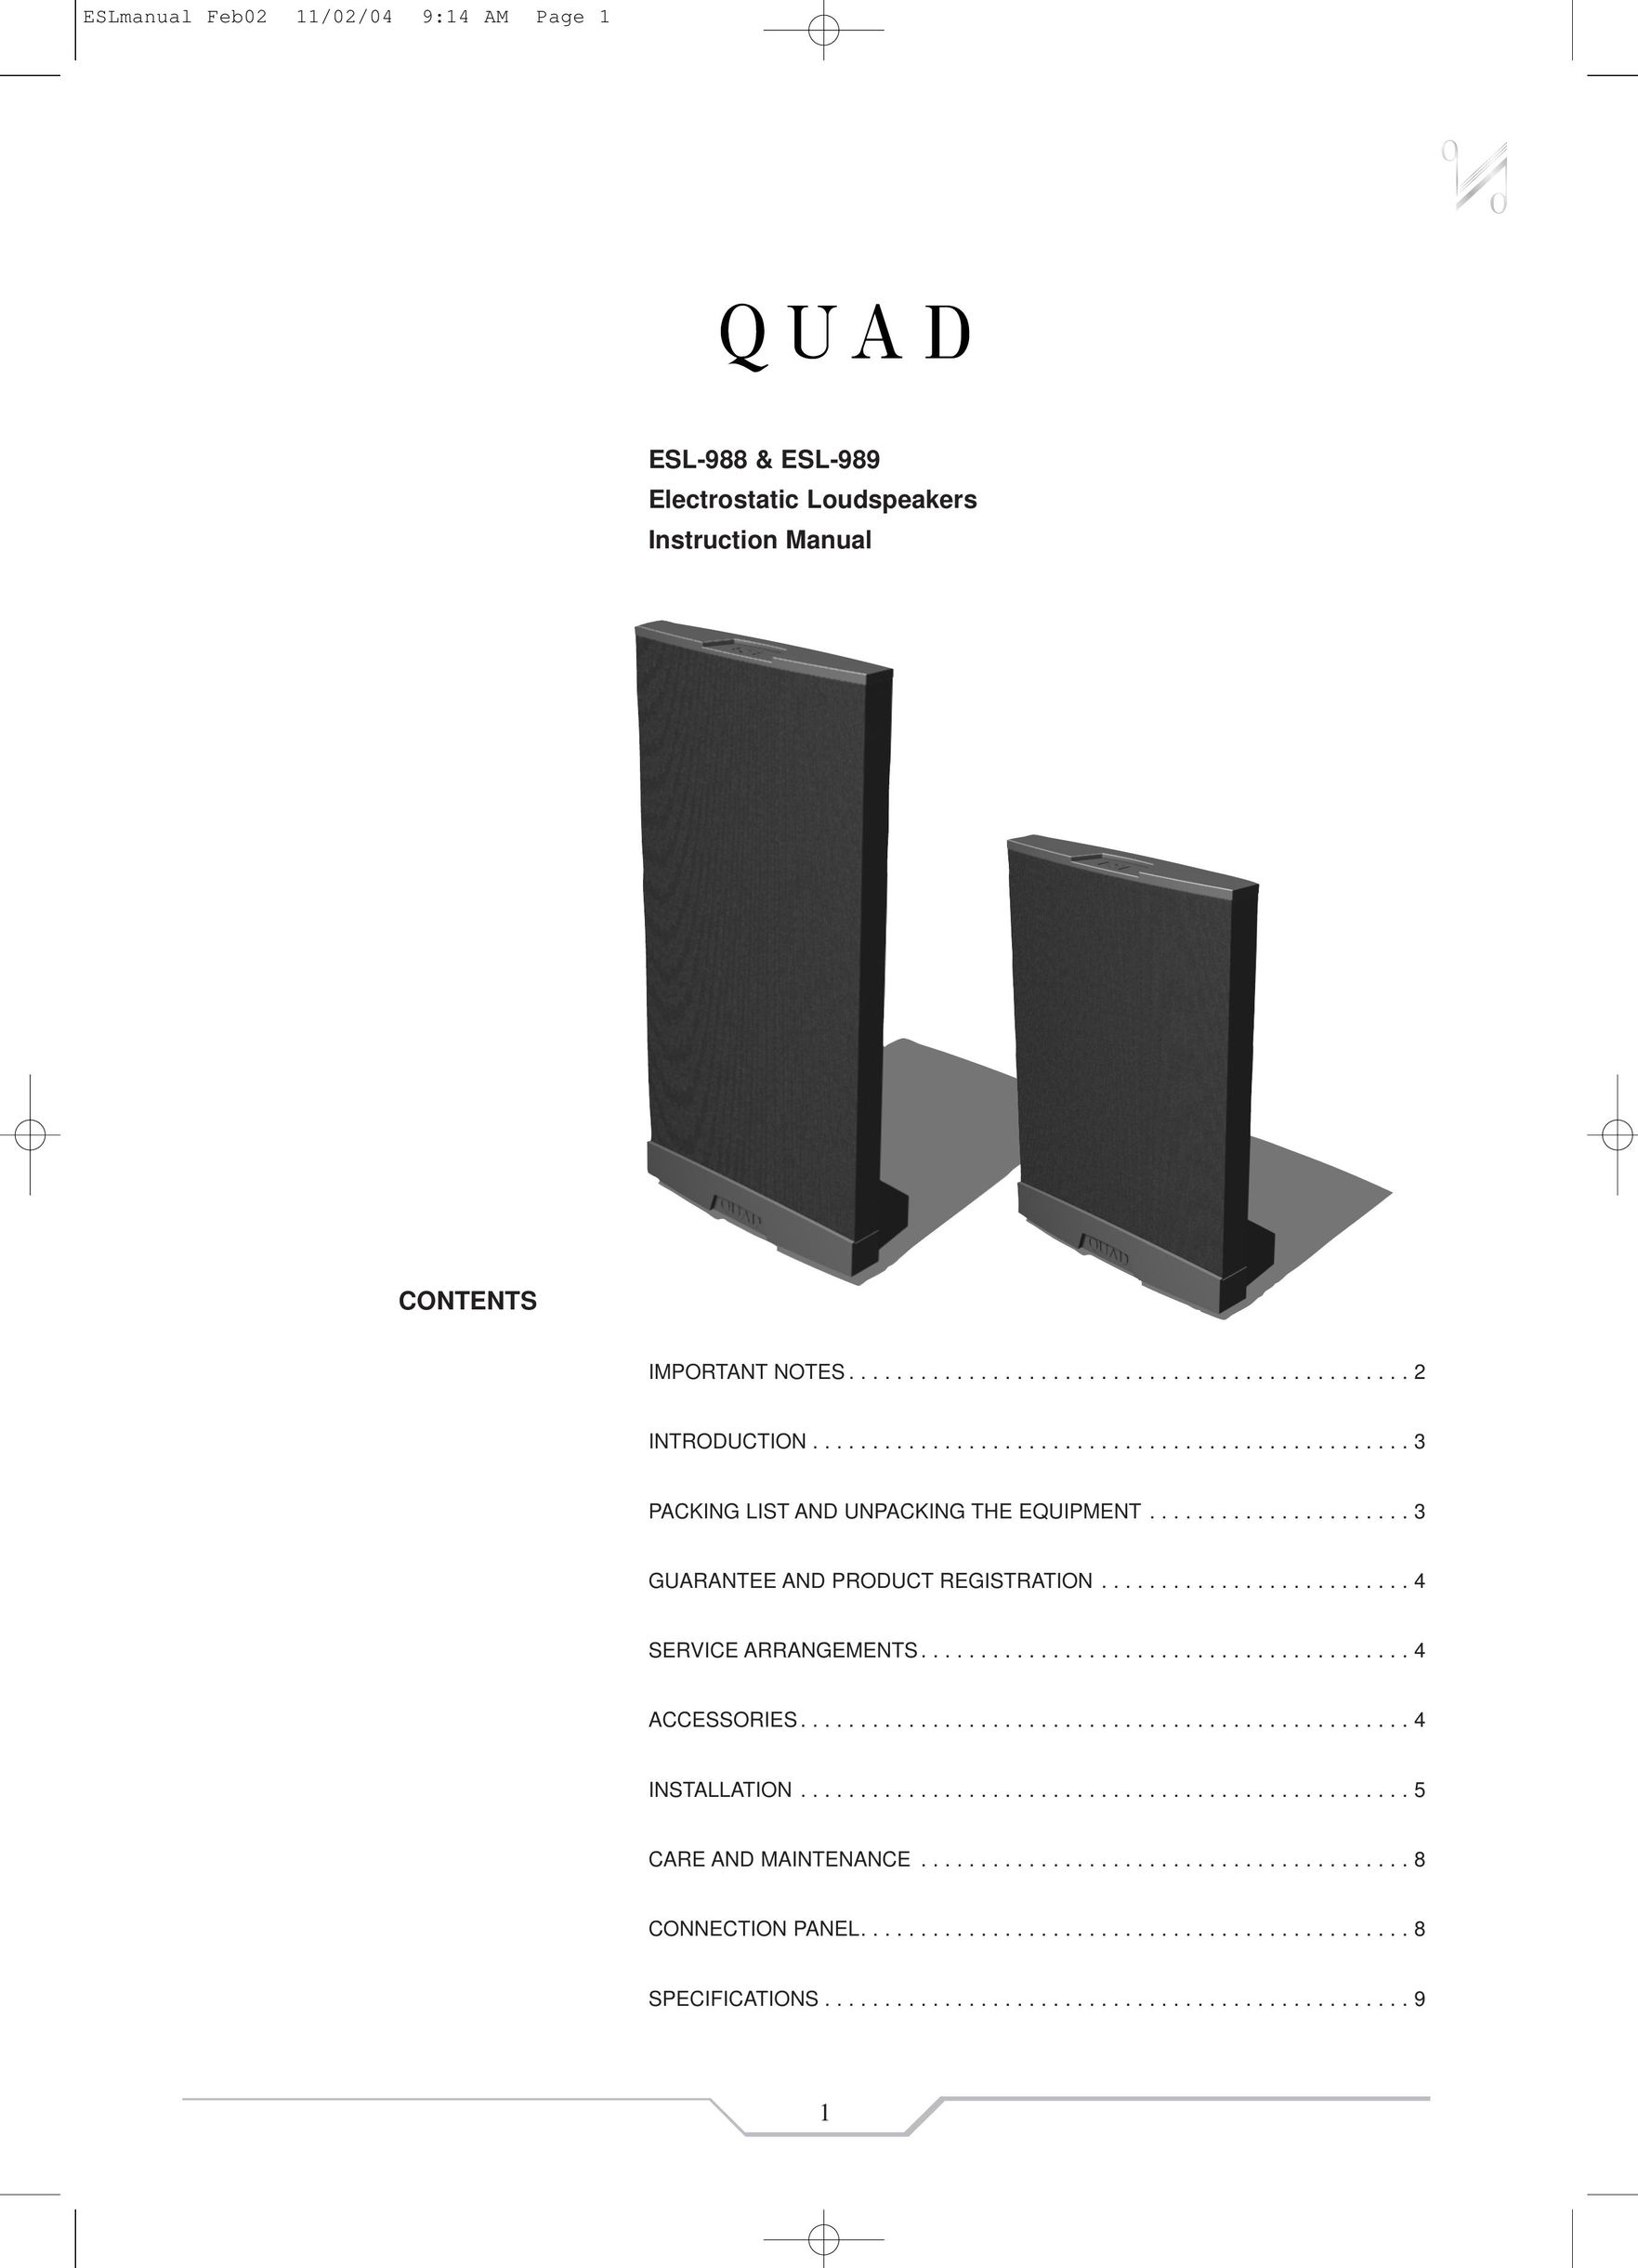 QUAD ESL-988 Speaker User Manual